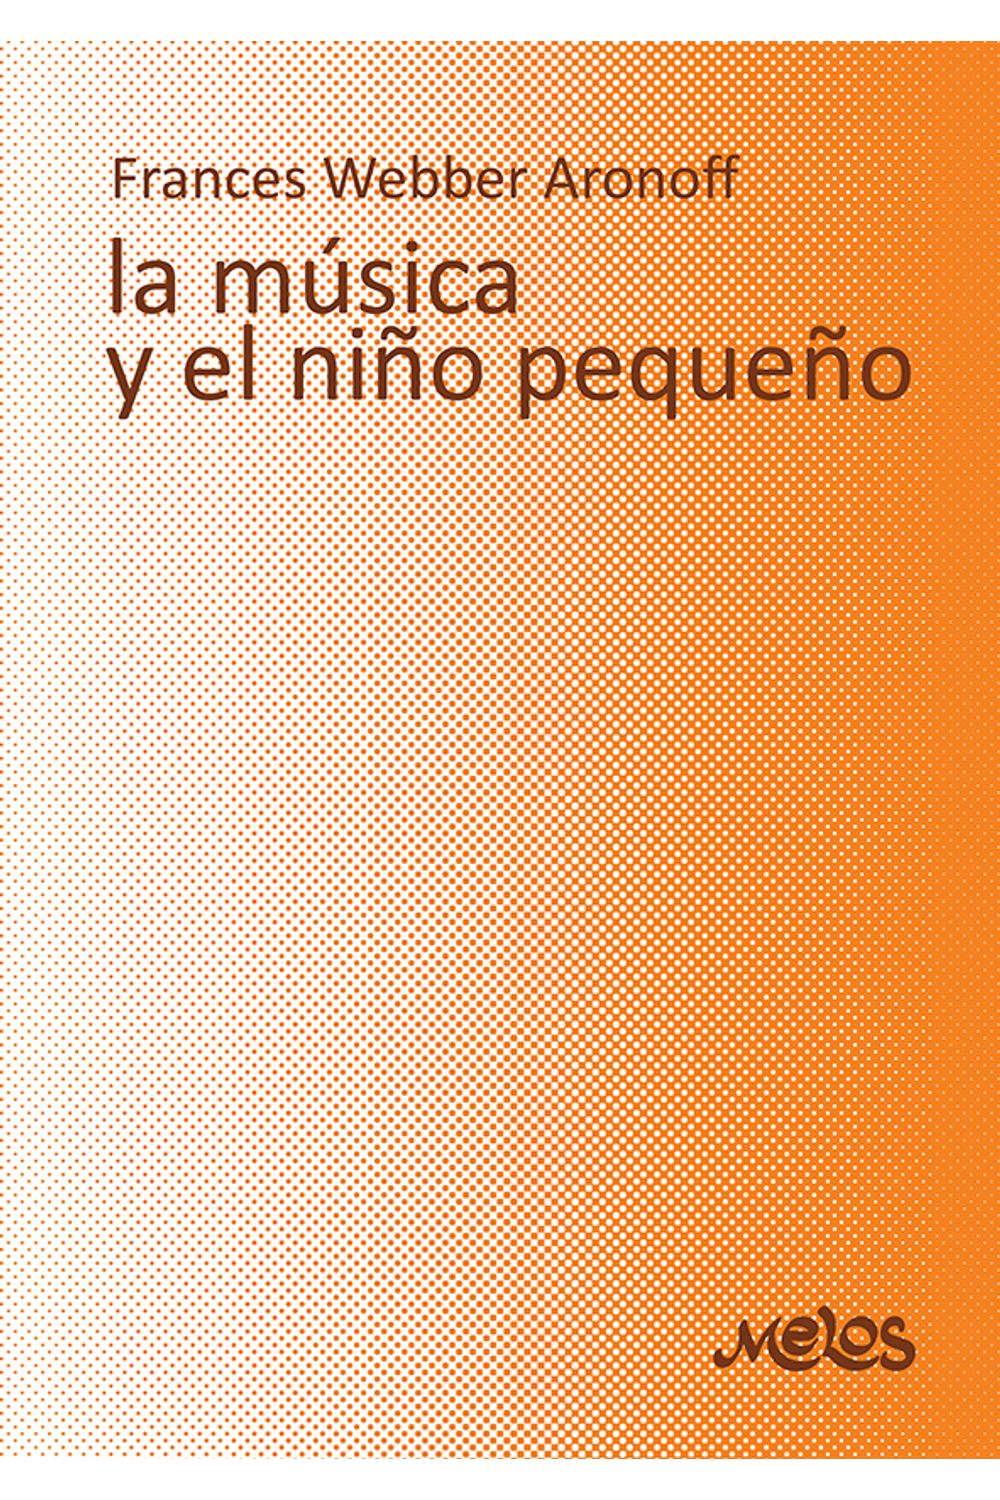 bm-ba13062-la-musica-y-el-nino-pequeno-melos-ediciones-musicales-9789876113571